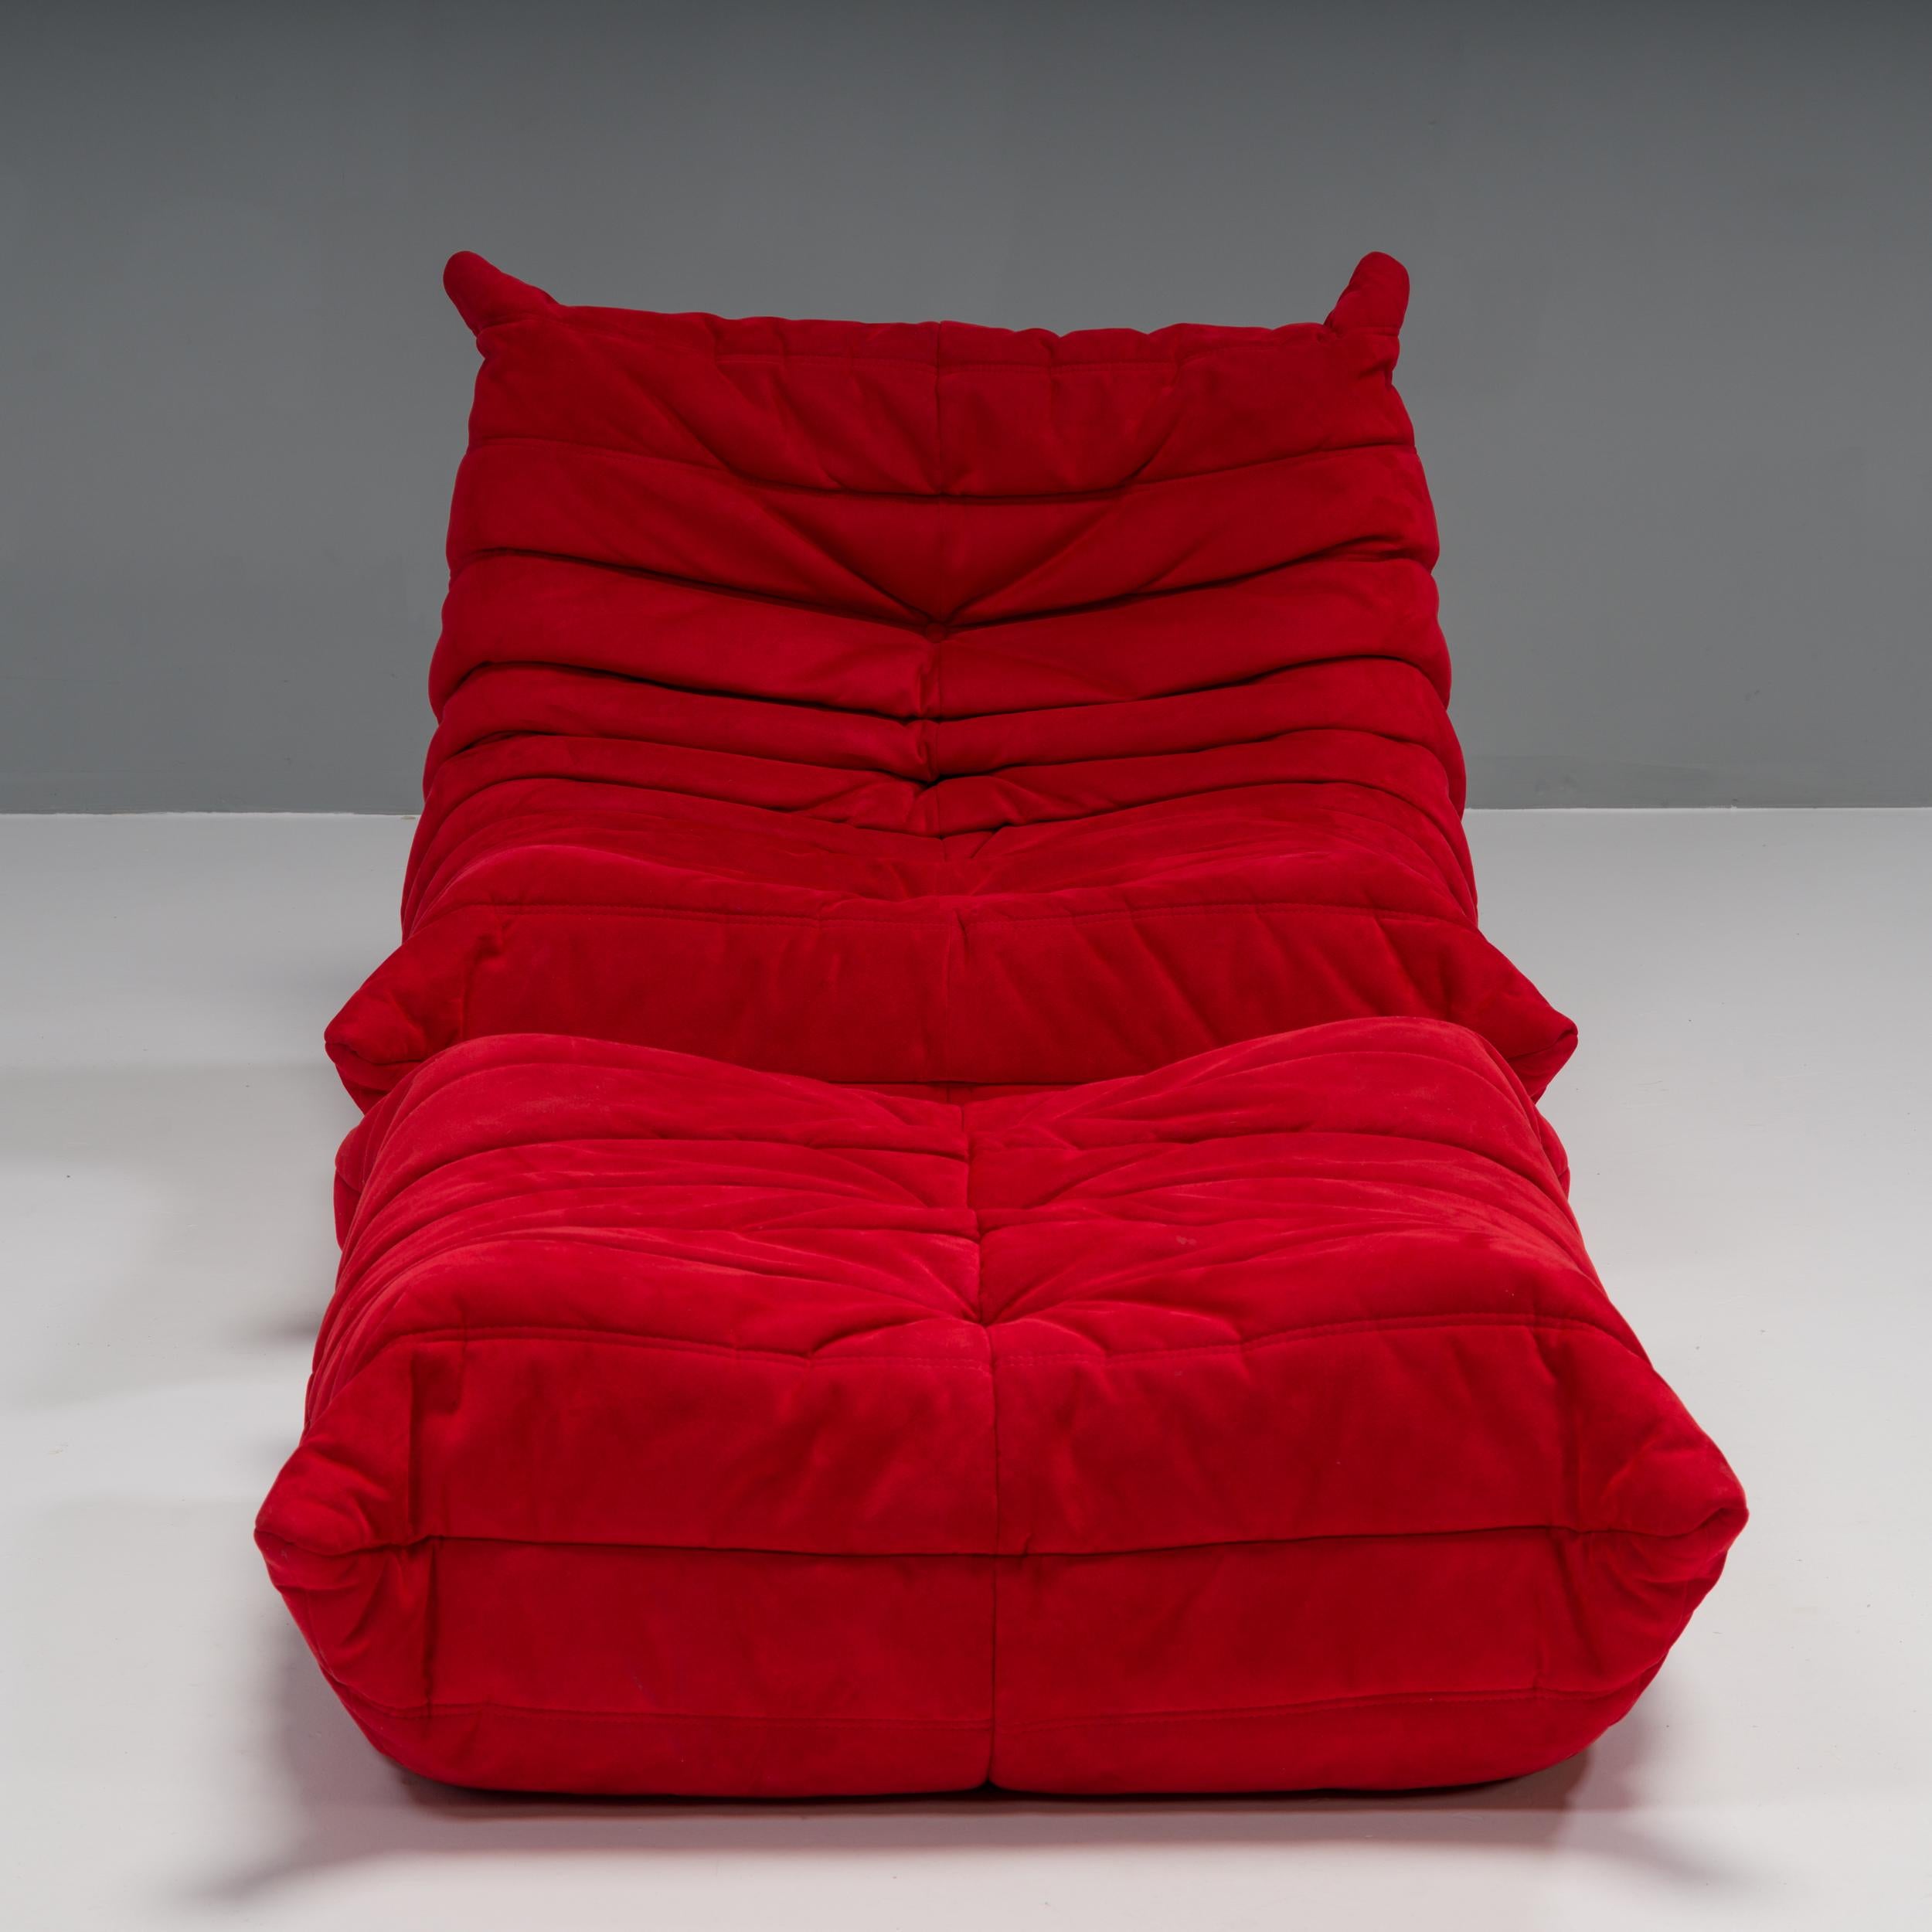 Das ikonische Sofa Togo, ursprünglich von Michel Ducaroy für Ligne Roset im Jahr 1973 entworfen, ist zu einem Designklassiker der Jahrhundertmitte geworden.

Dieser Kaminsessel und Fußhocker ist unglaublich vielseitig und kann allein oder in